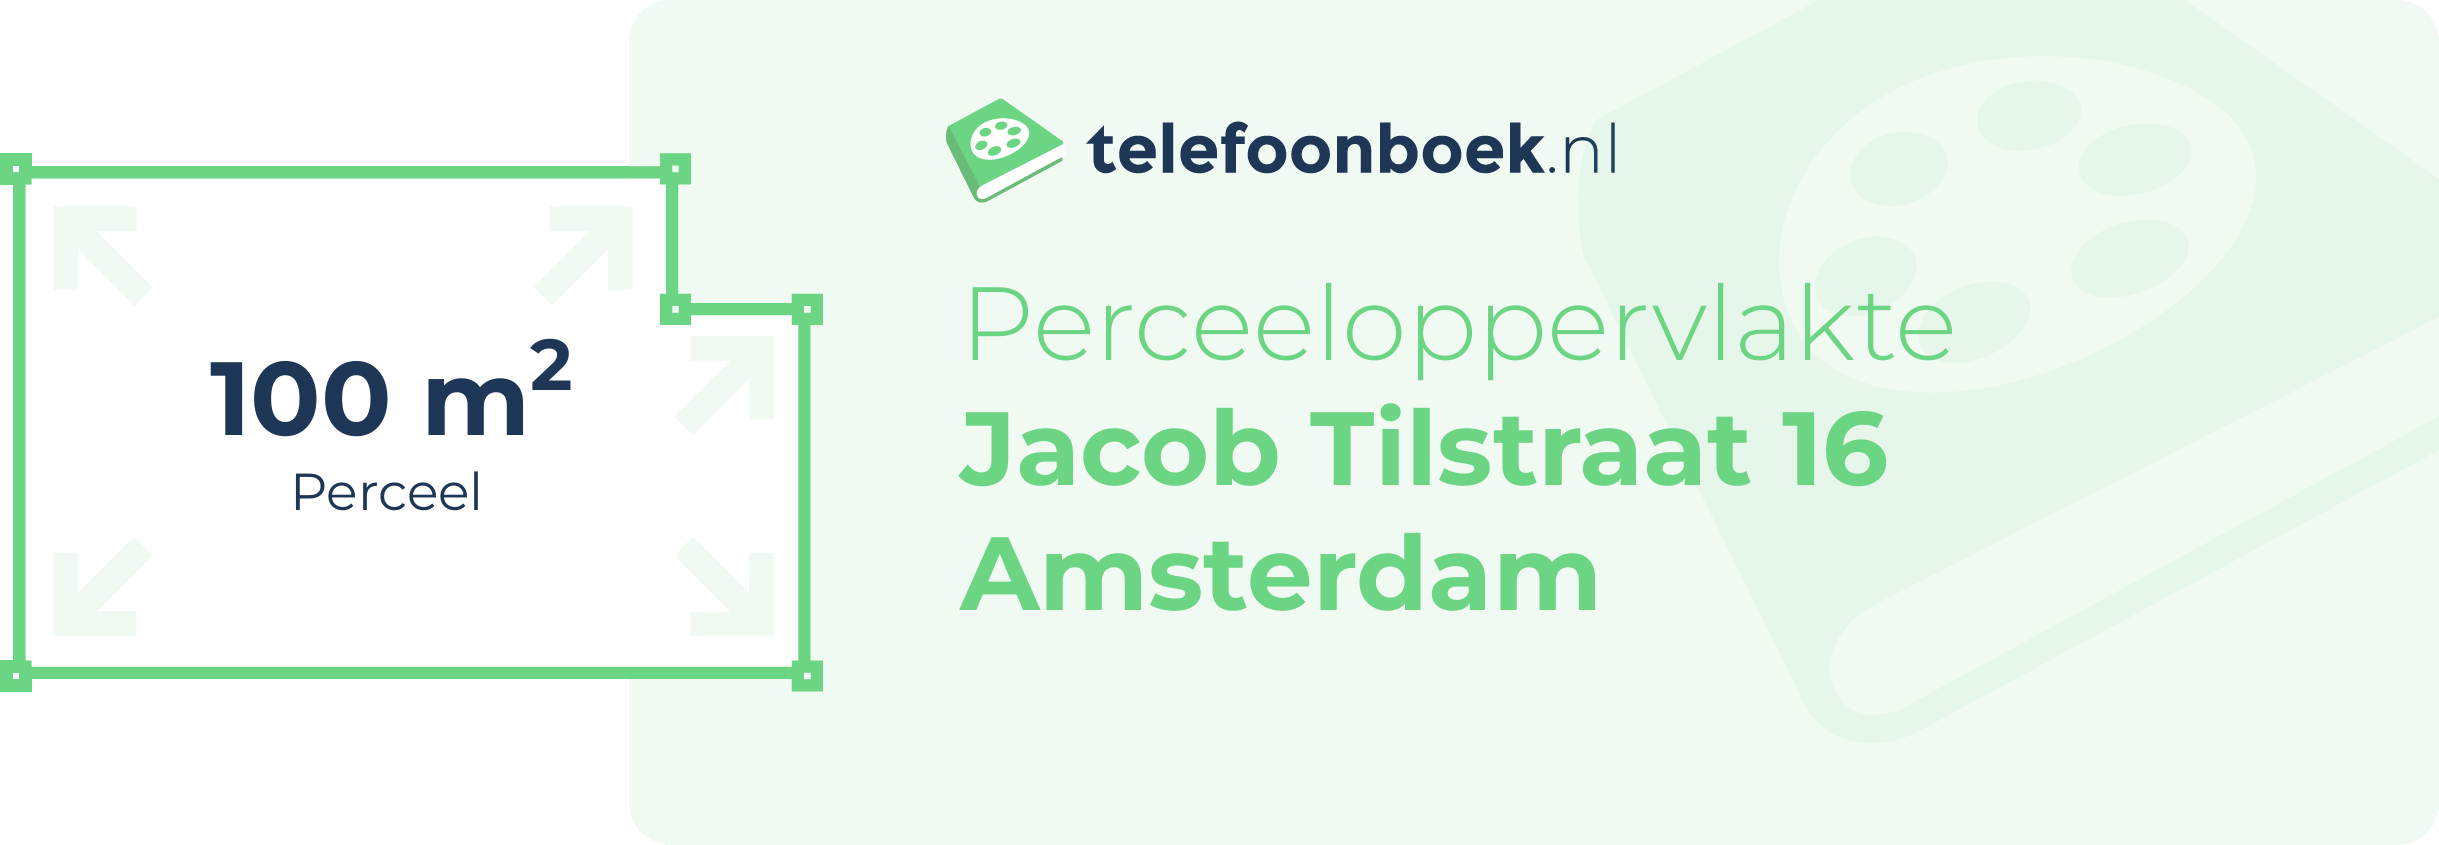 Perceeloppervlakte Jacob Tilstraat 16 Amsterdam